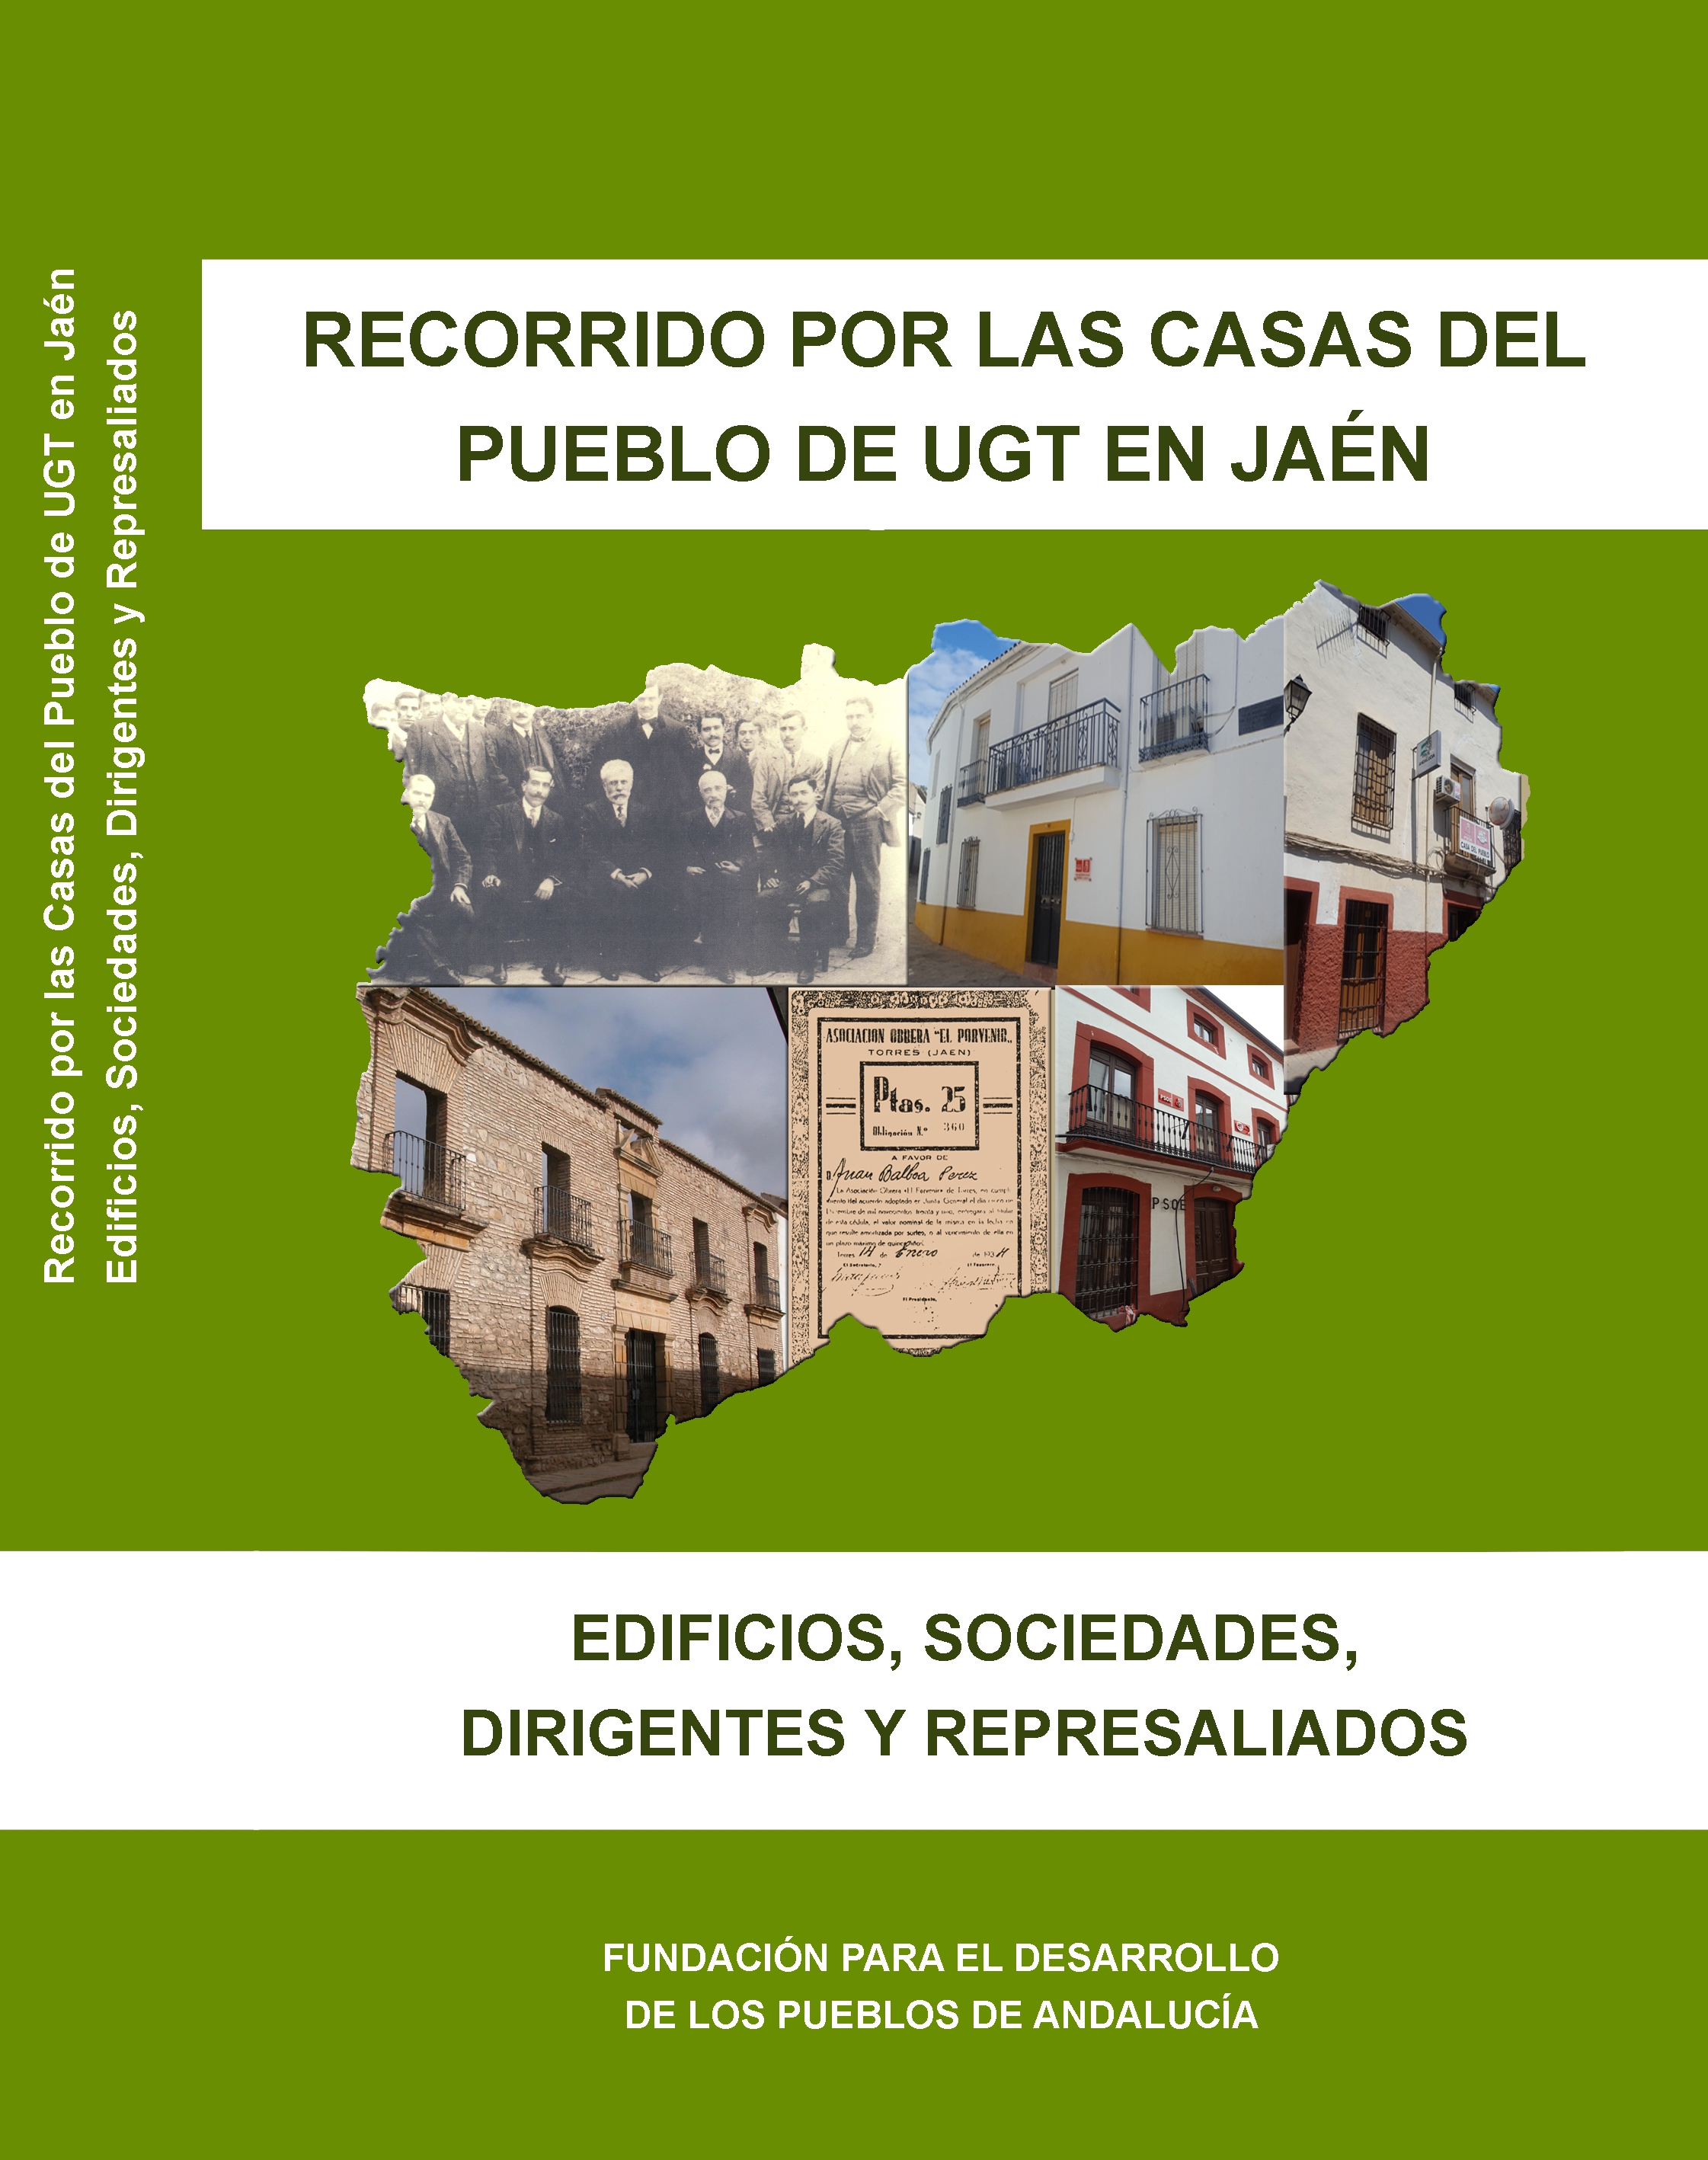 Recorrido por las Casas del Pueblo de UGT en Jaén. Edificios, sociedades, dirigentes y represaliados